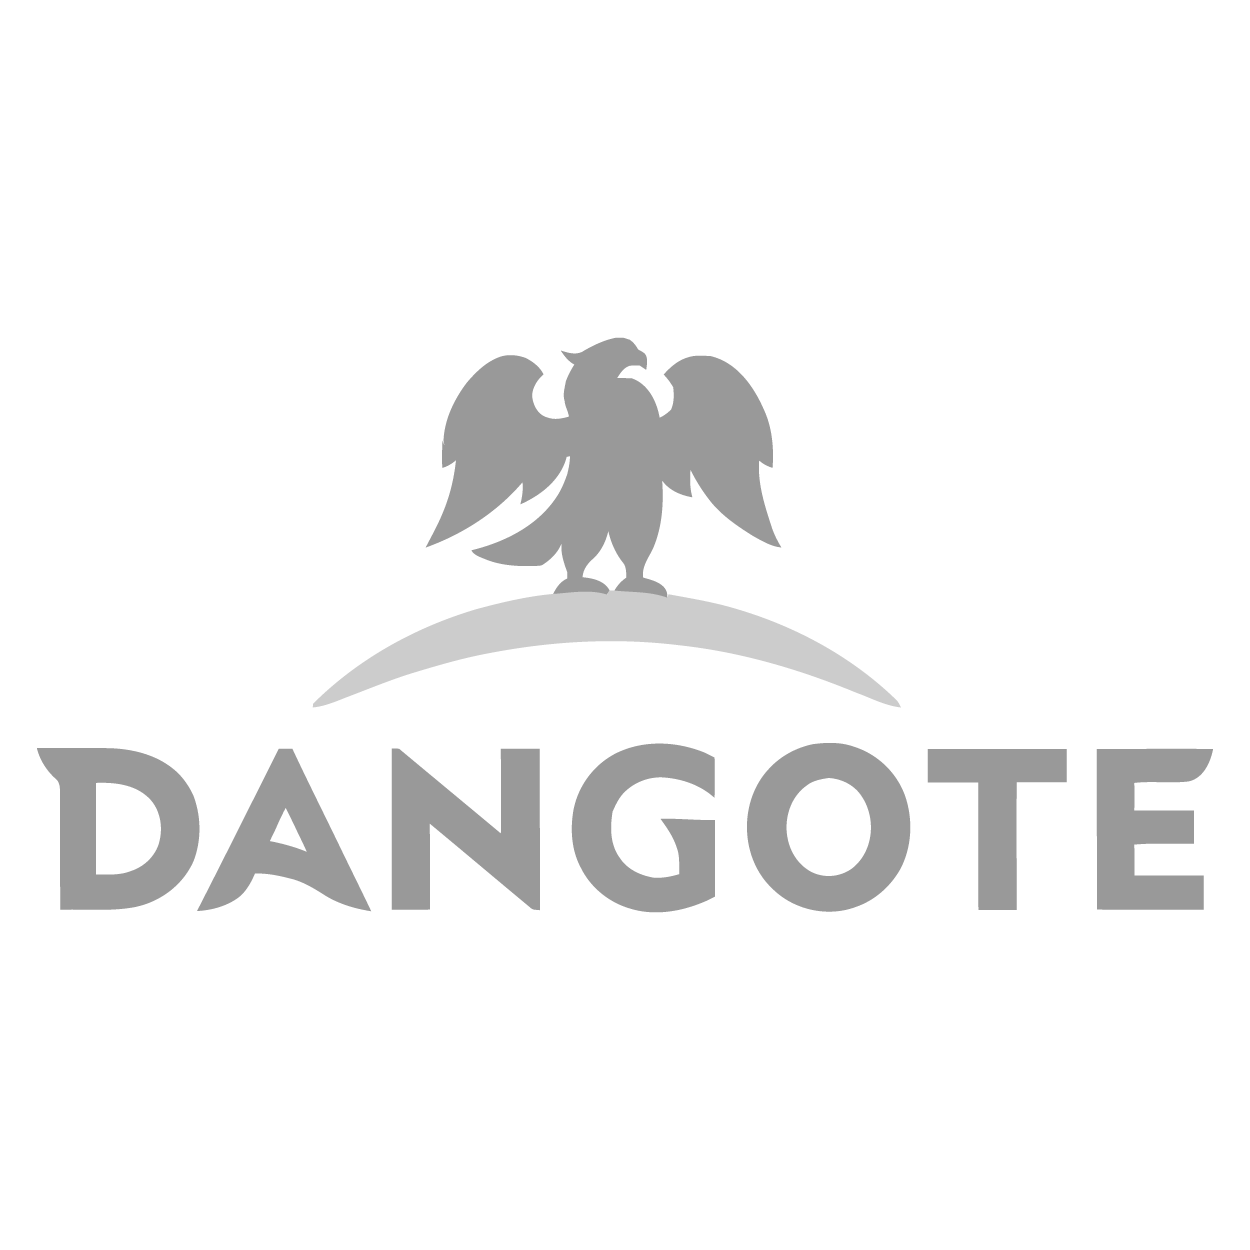 Dangote-01.png